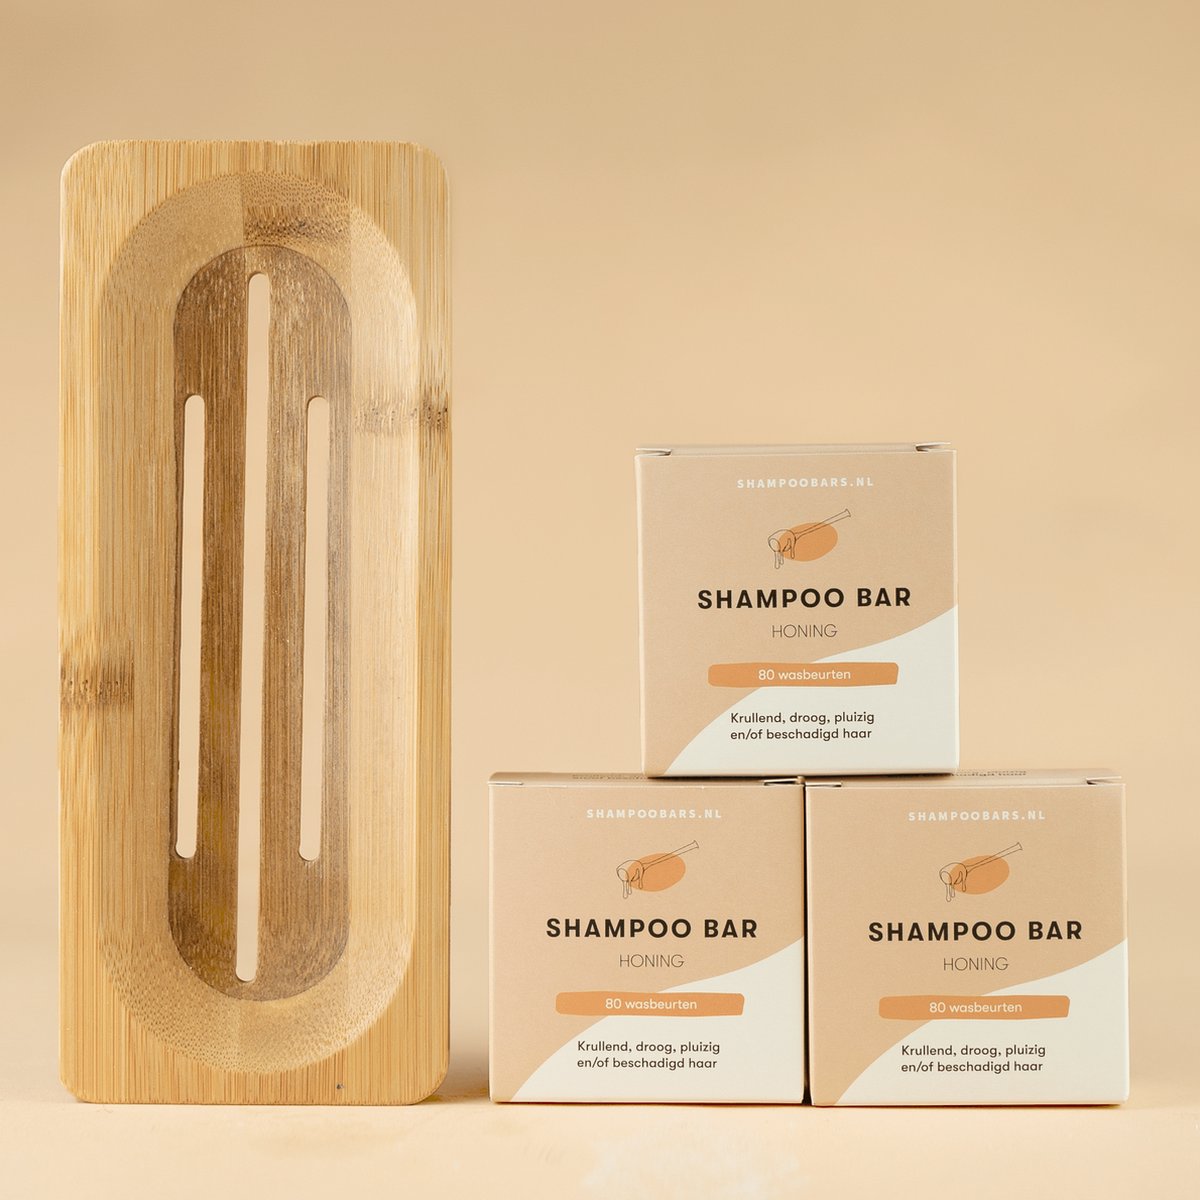 3x Shampoo Bar Honing + Bamboe plank bundel | Handgemaakt in Nederland | CG-proof | Gemaakt van duurzaam bamboe | 100% biologisch afbreekbare verpakking